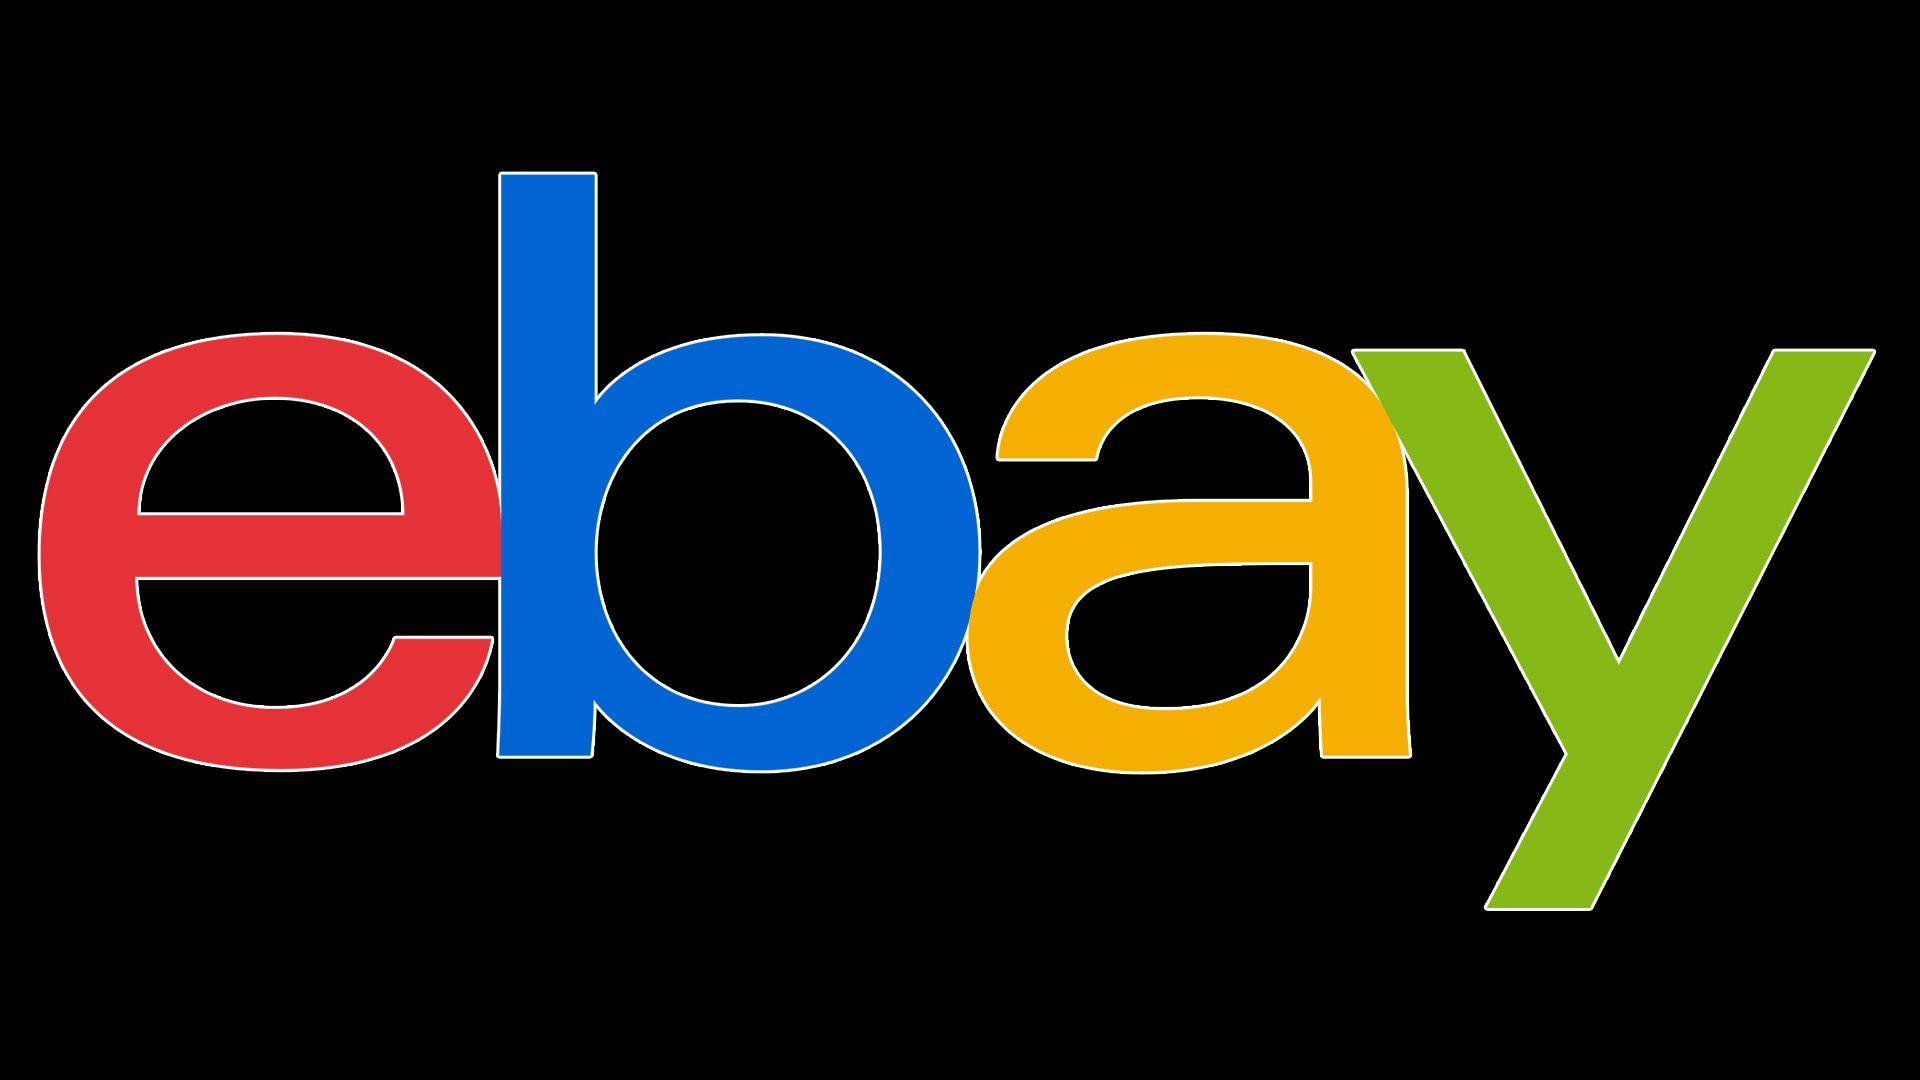 eBay New Logo - eBay logo, symbol, meaning, History and Evolution